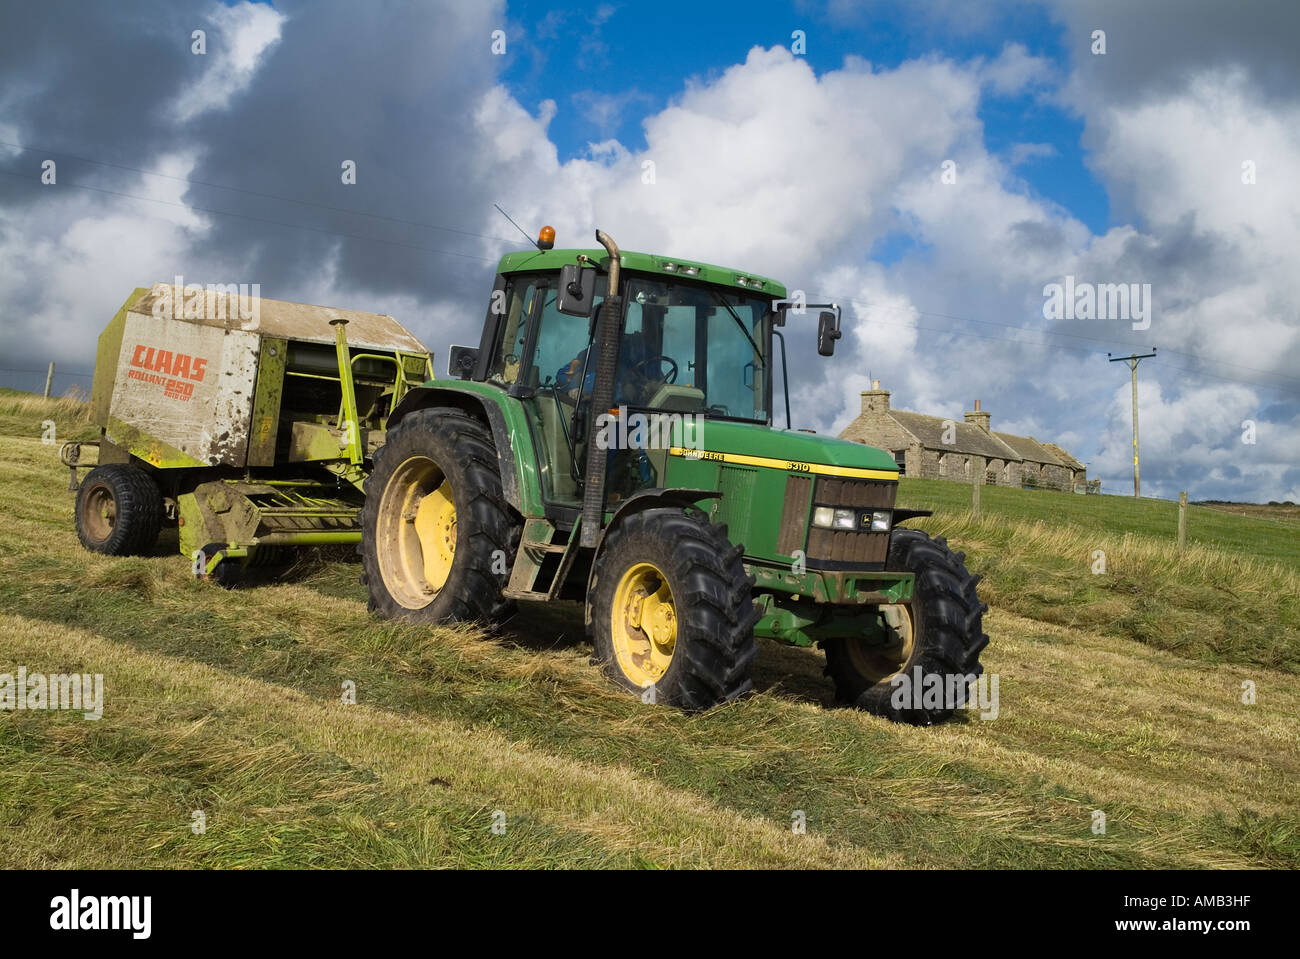 dh RÉCOLTE Royaume-Uni tracteur agricole presse à balles pressage d'herbe d'ensilage sec et de cottage Orphir Orkney machine agricole à rouleaux Banque D'Images